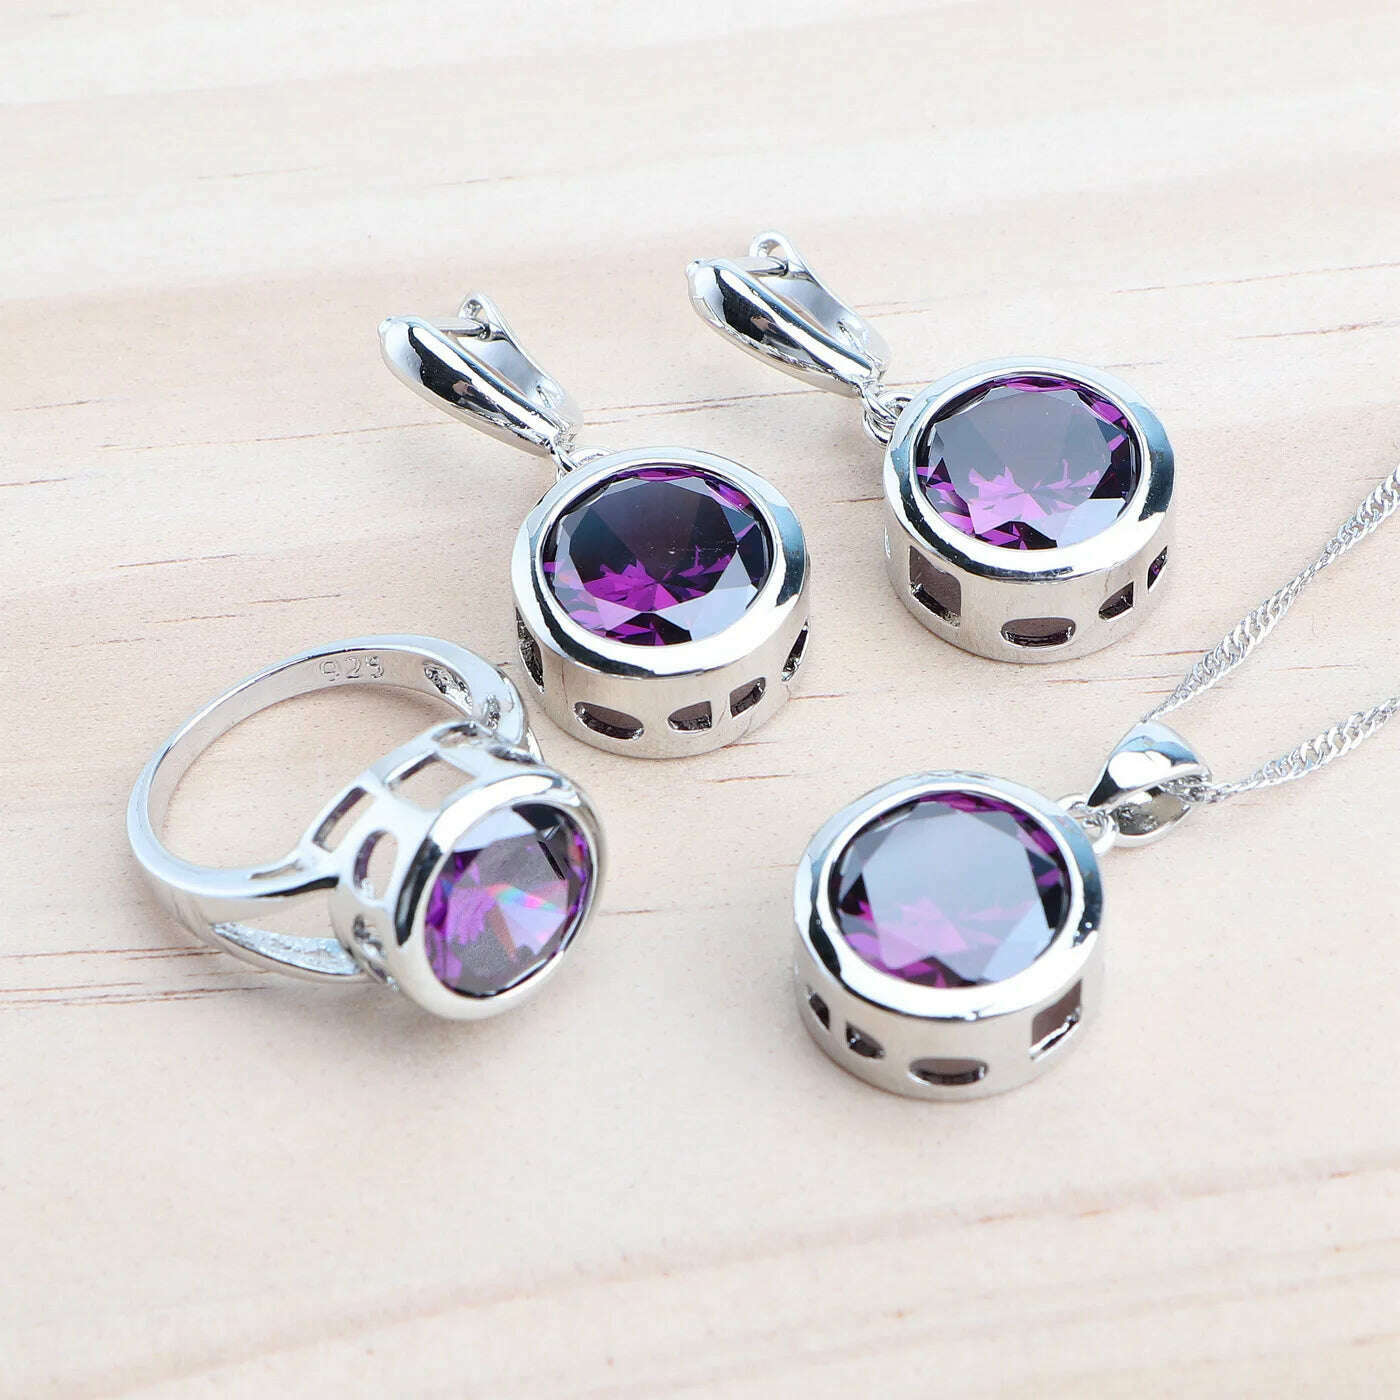 KIMLUD, Bridal Silver 925 Jewelry Sets For Women Wedding Jewelry Ladies Purple Zircon Rings Bracelets Set Earrings Pendant Necklace, 3PCS-Purple / 6, KIMLUD Women's Clothes